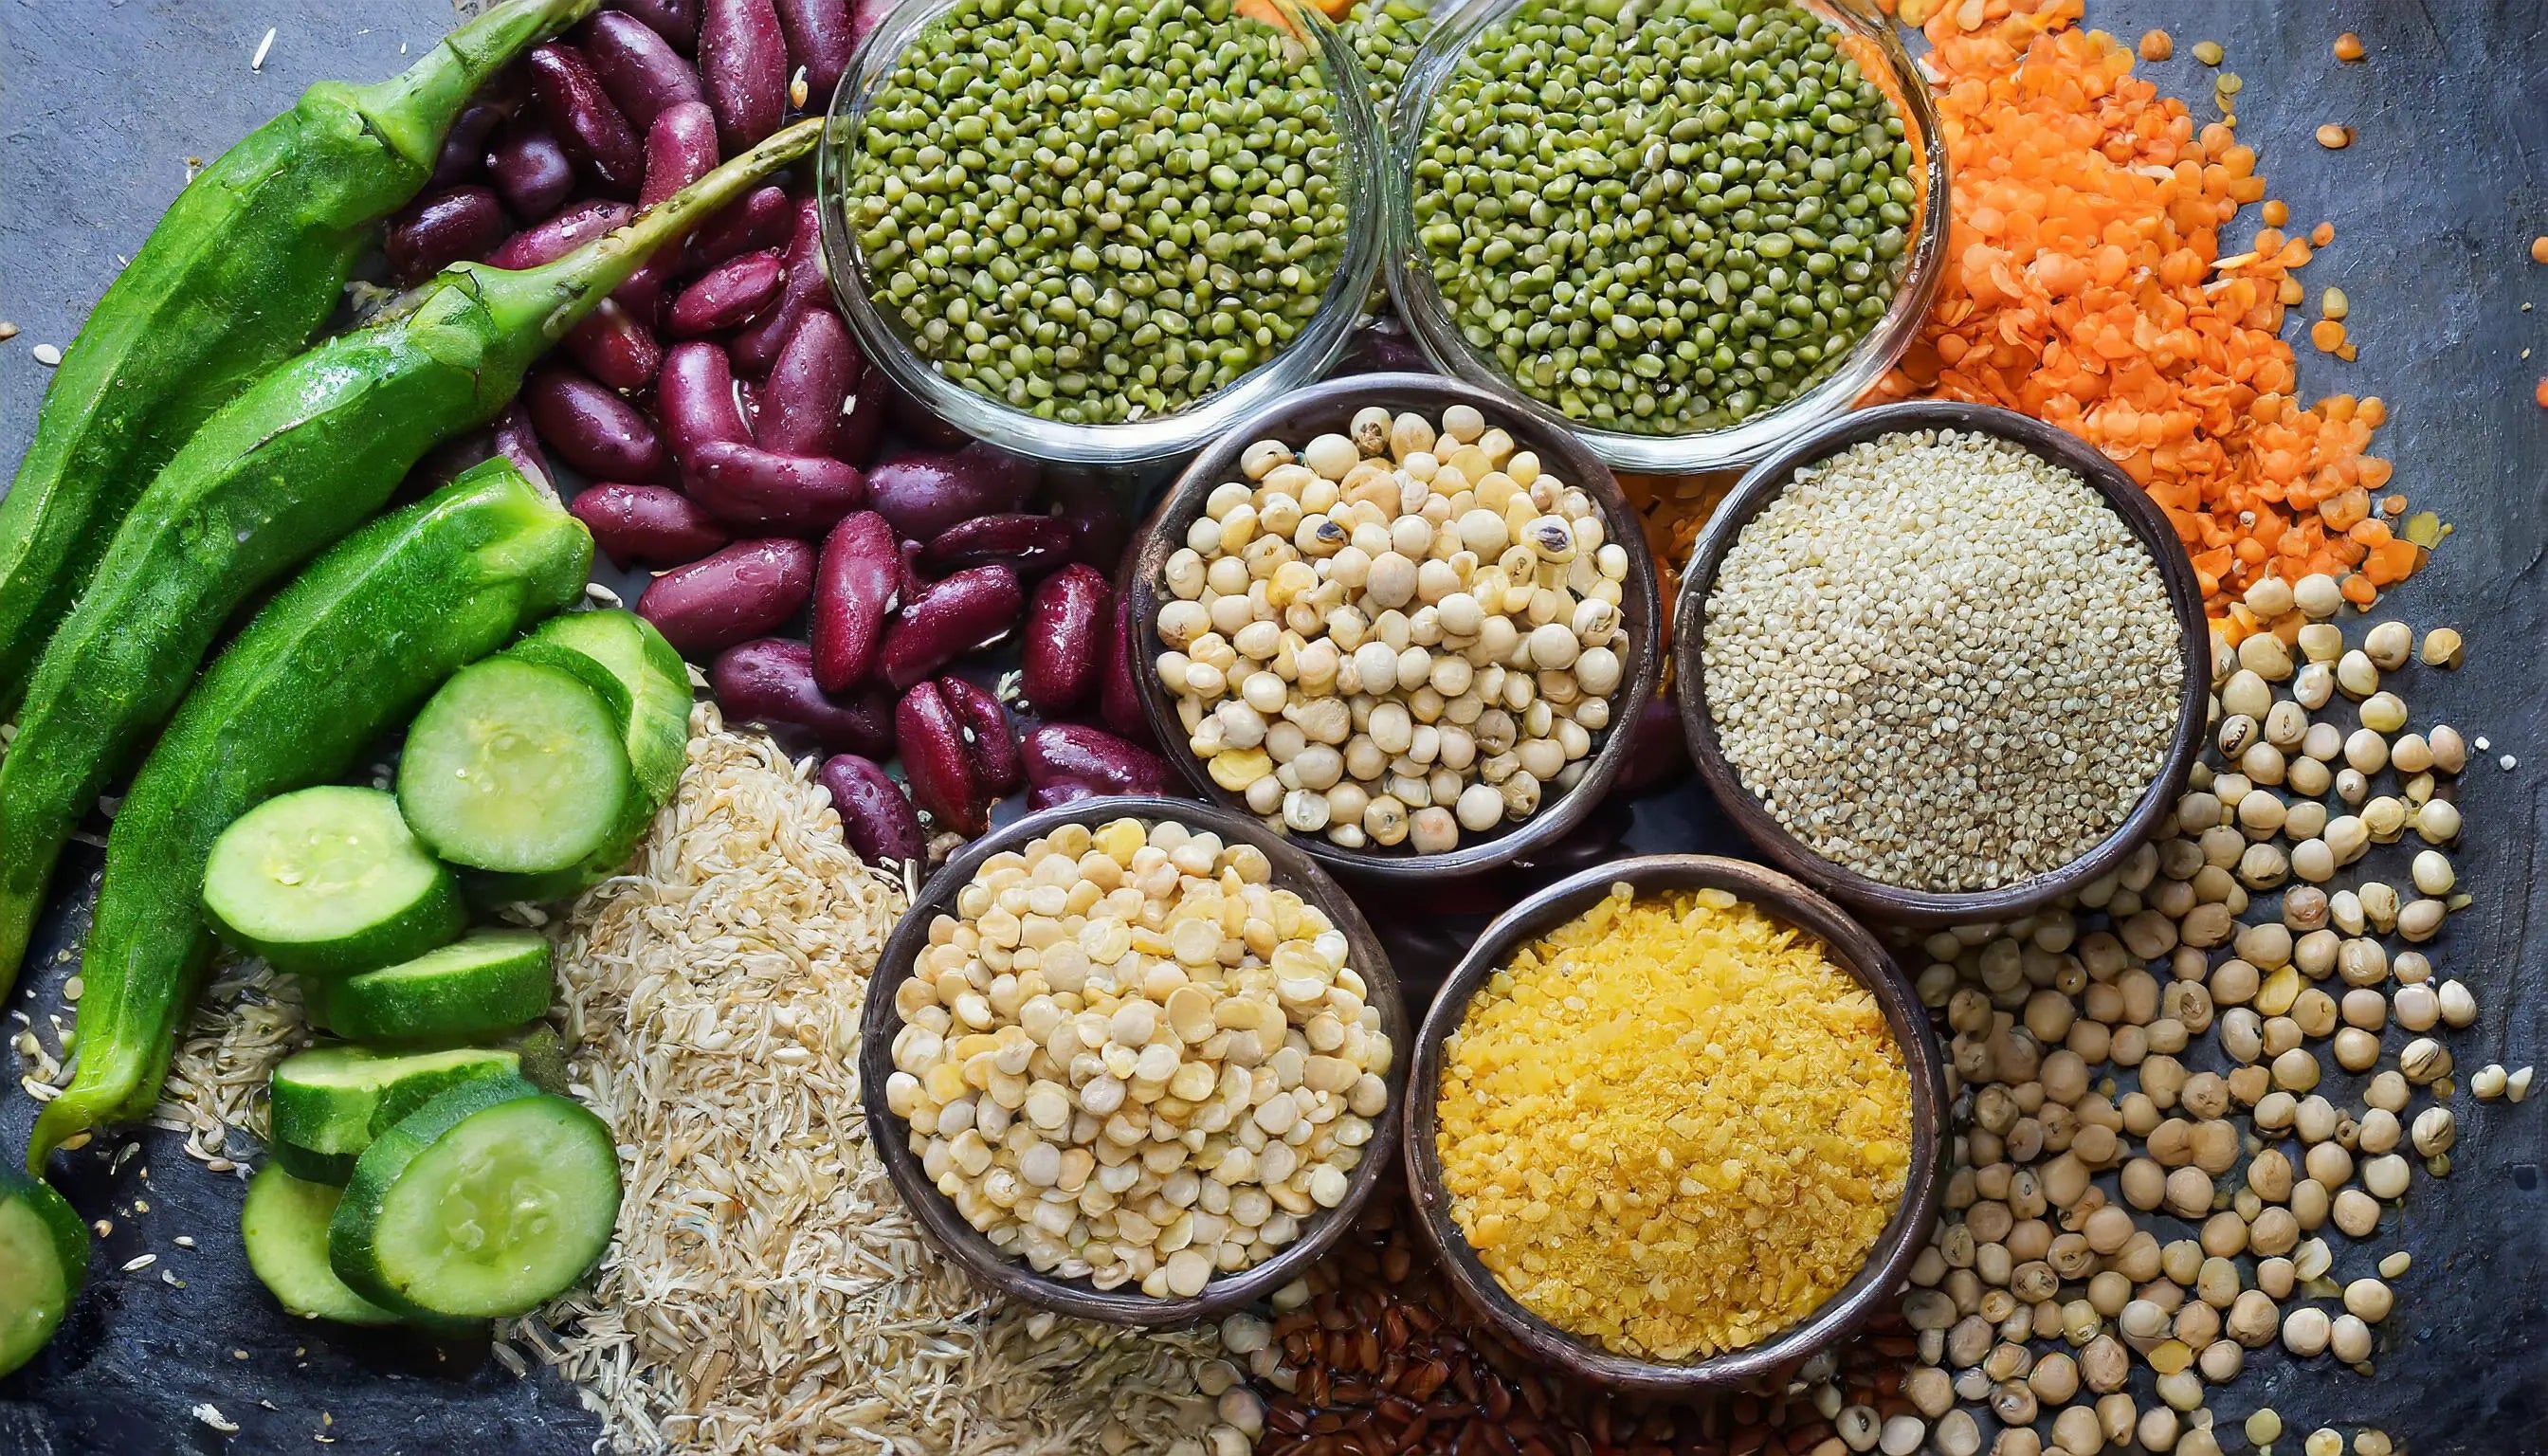 tels que les haricots, les lentilles, les légumes non féculents et les grains entiers comme l'avoine et le quinoa